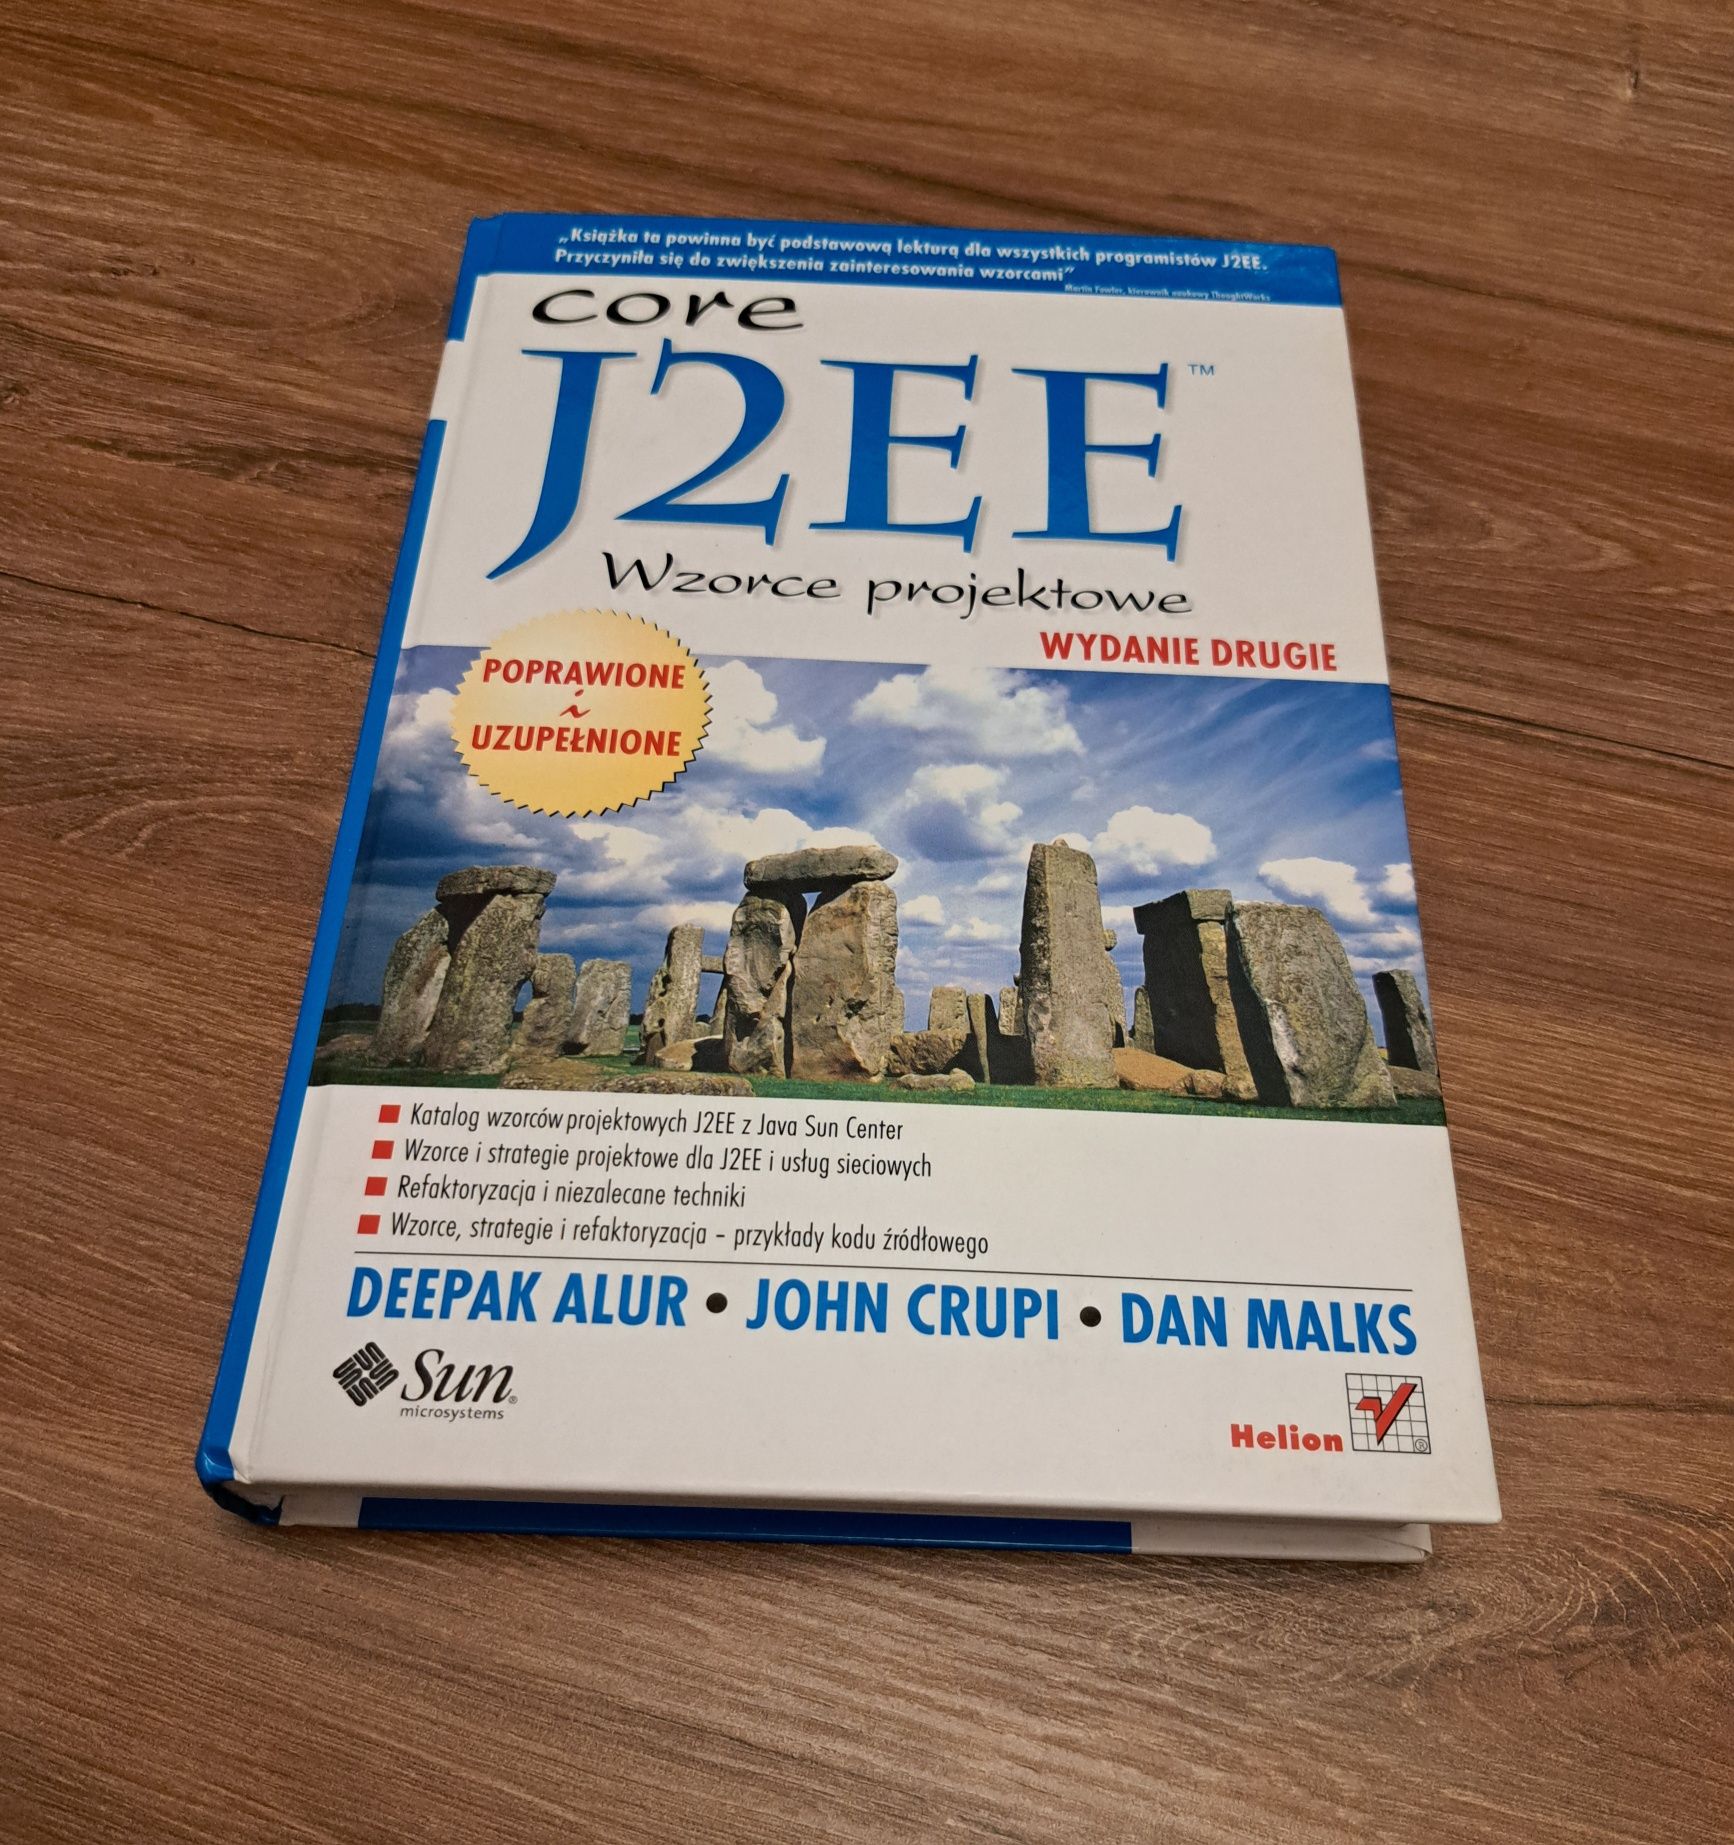 Core J2EE wzorce projektowe wyd. Helion